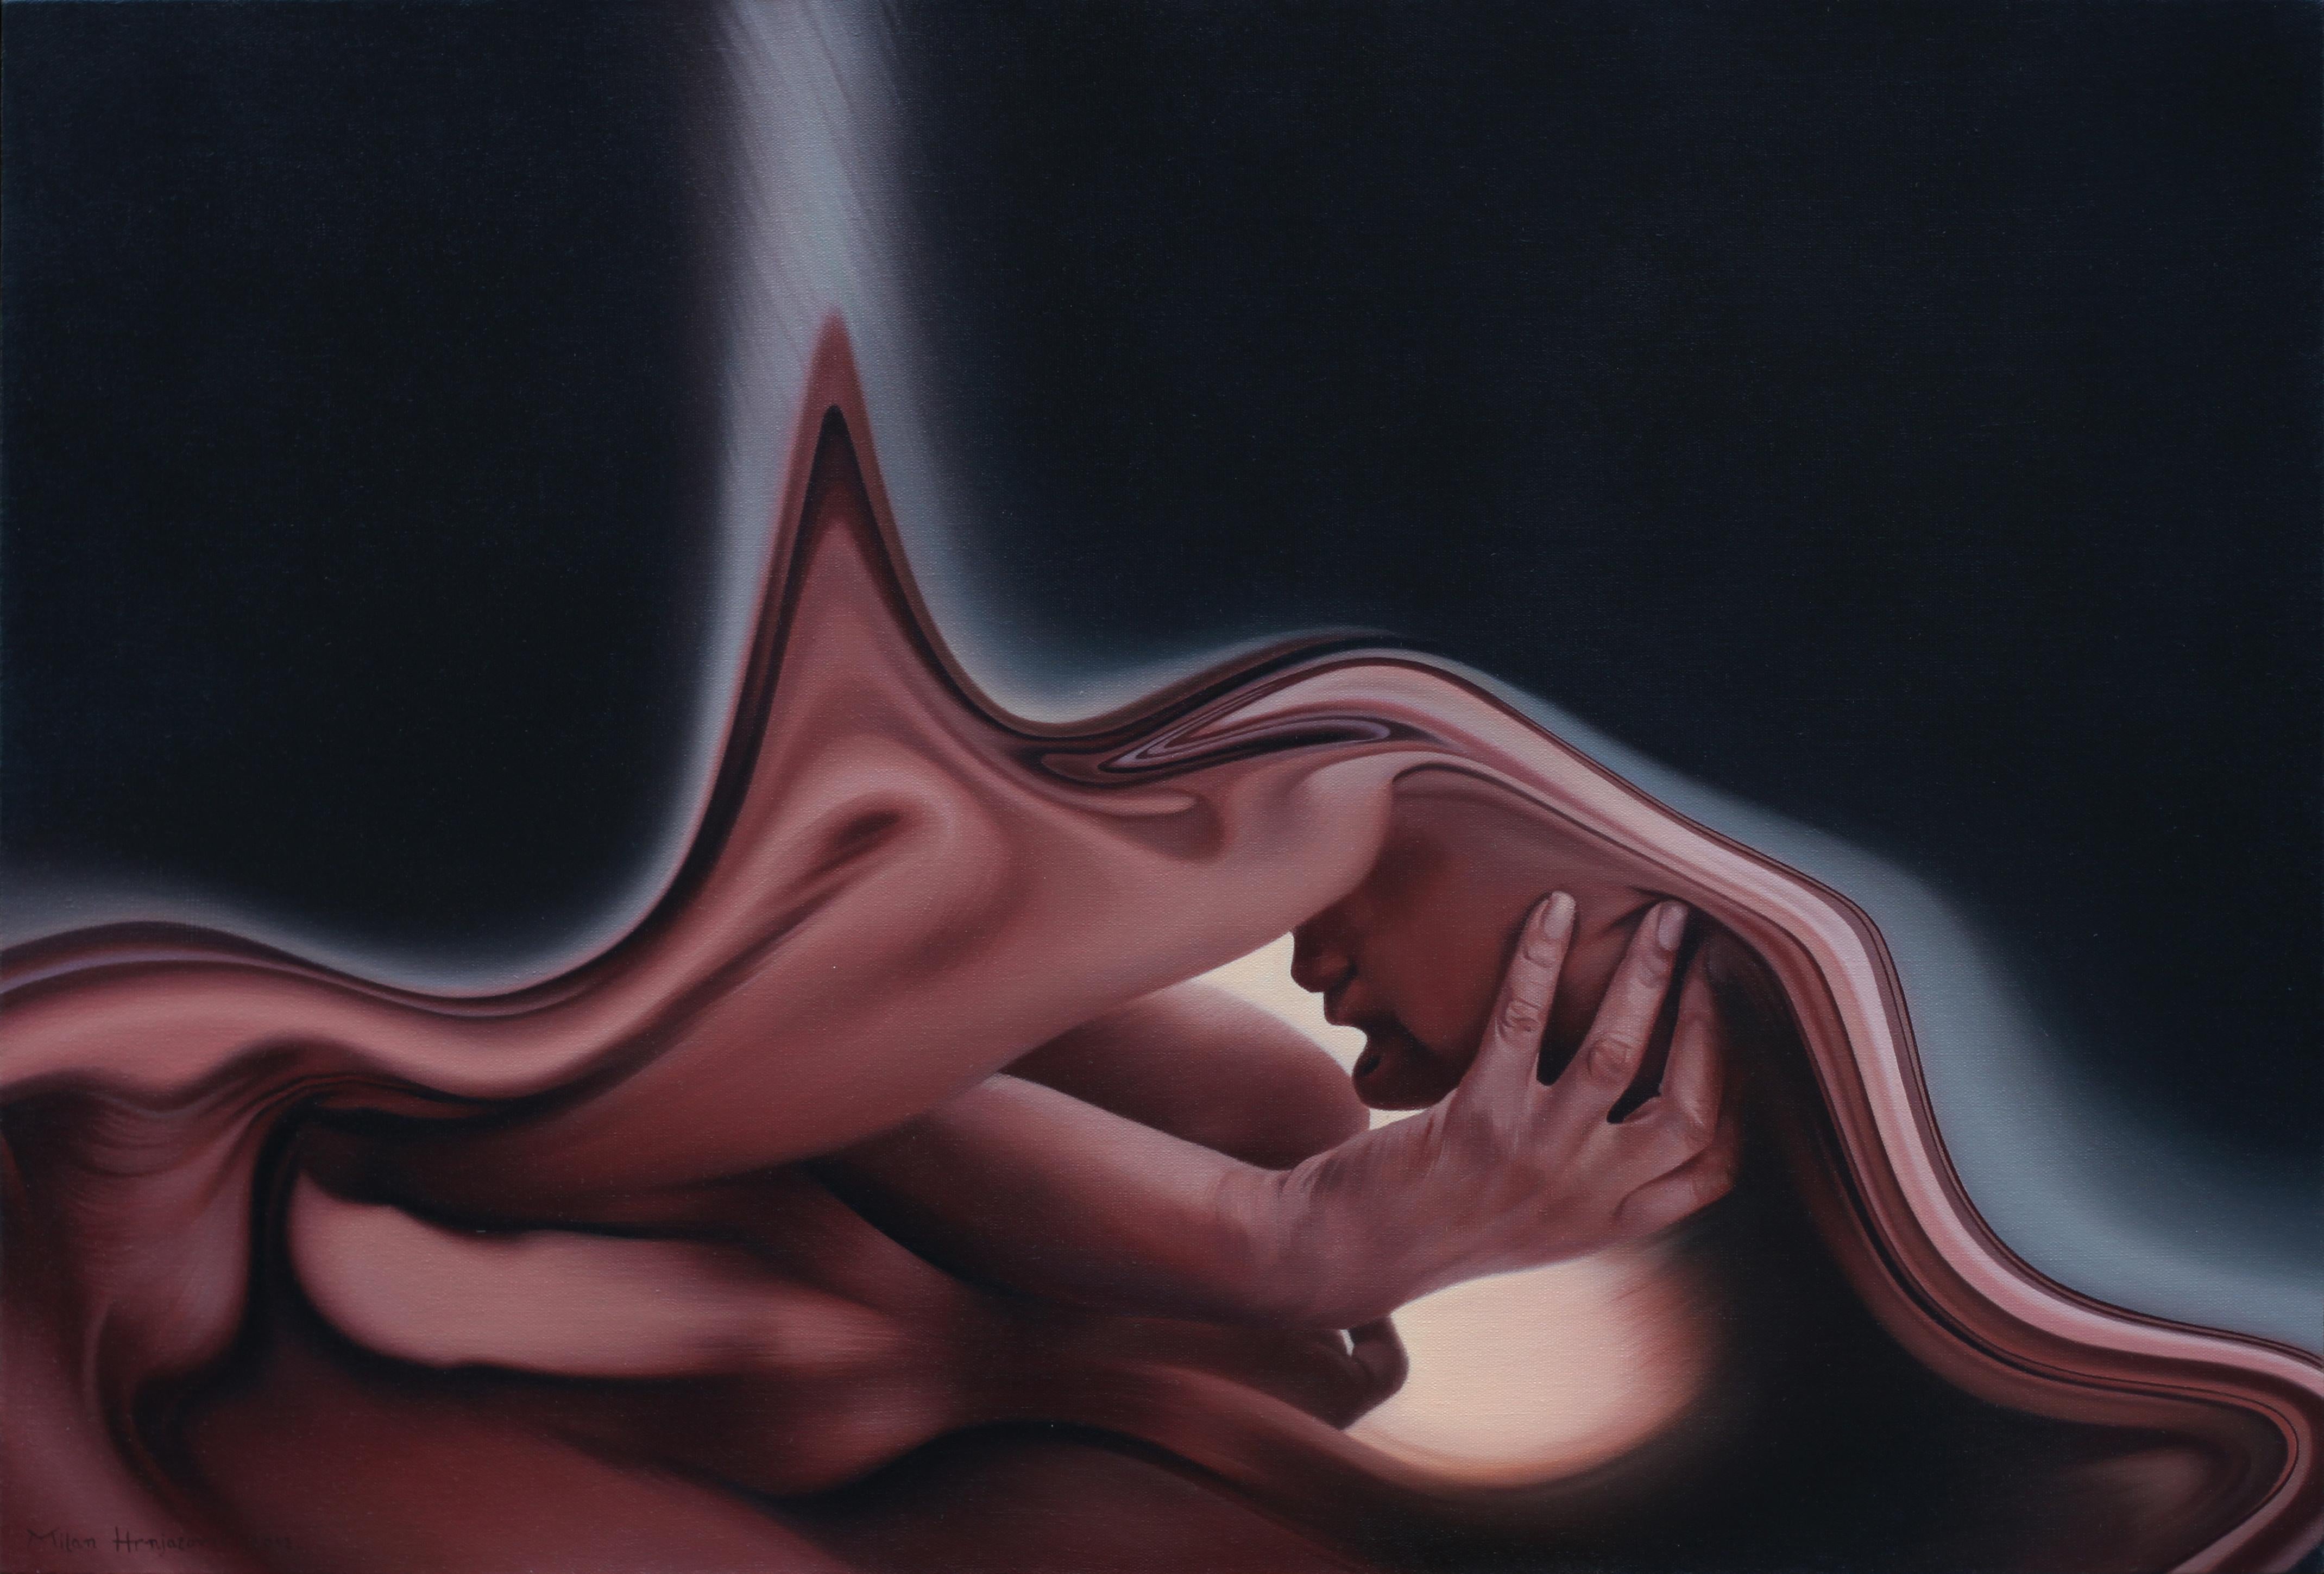 Milan Hrnjazovic Nude Painting - Night, 21st century, modern, nude, surrealism, couple